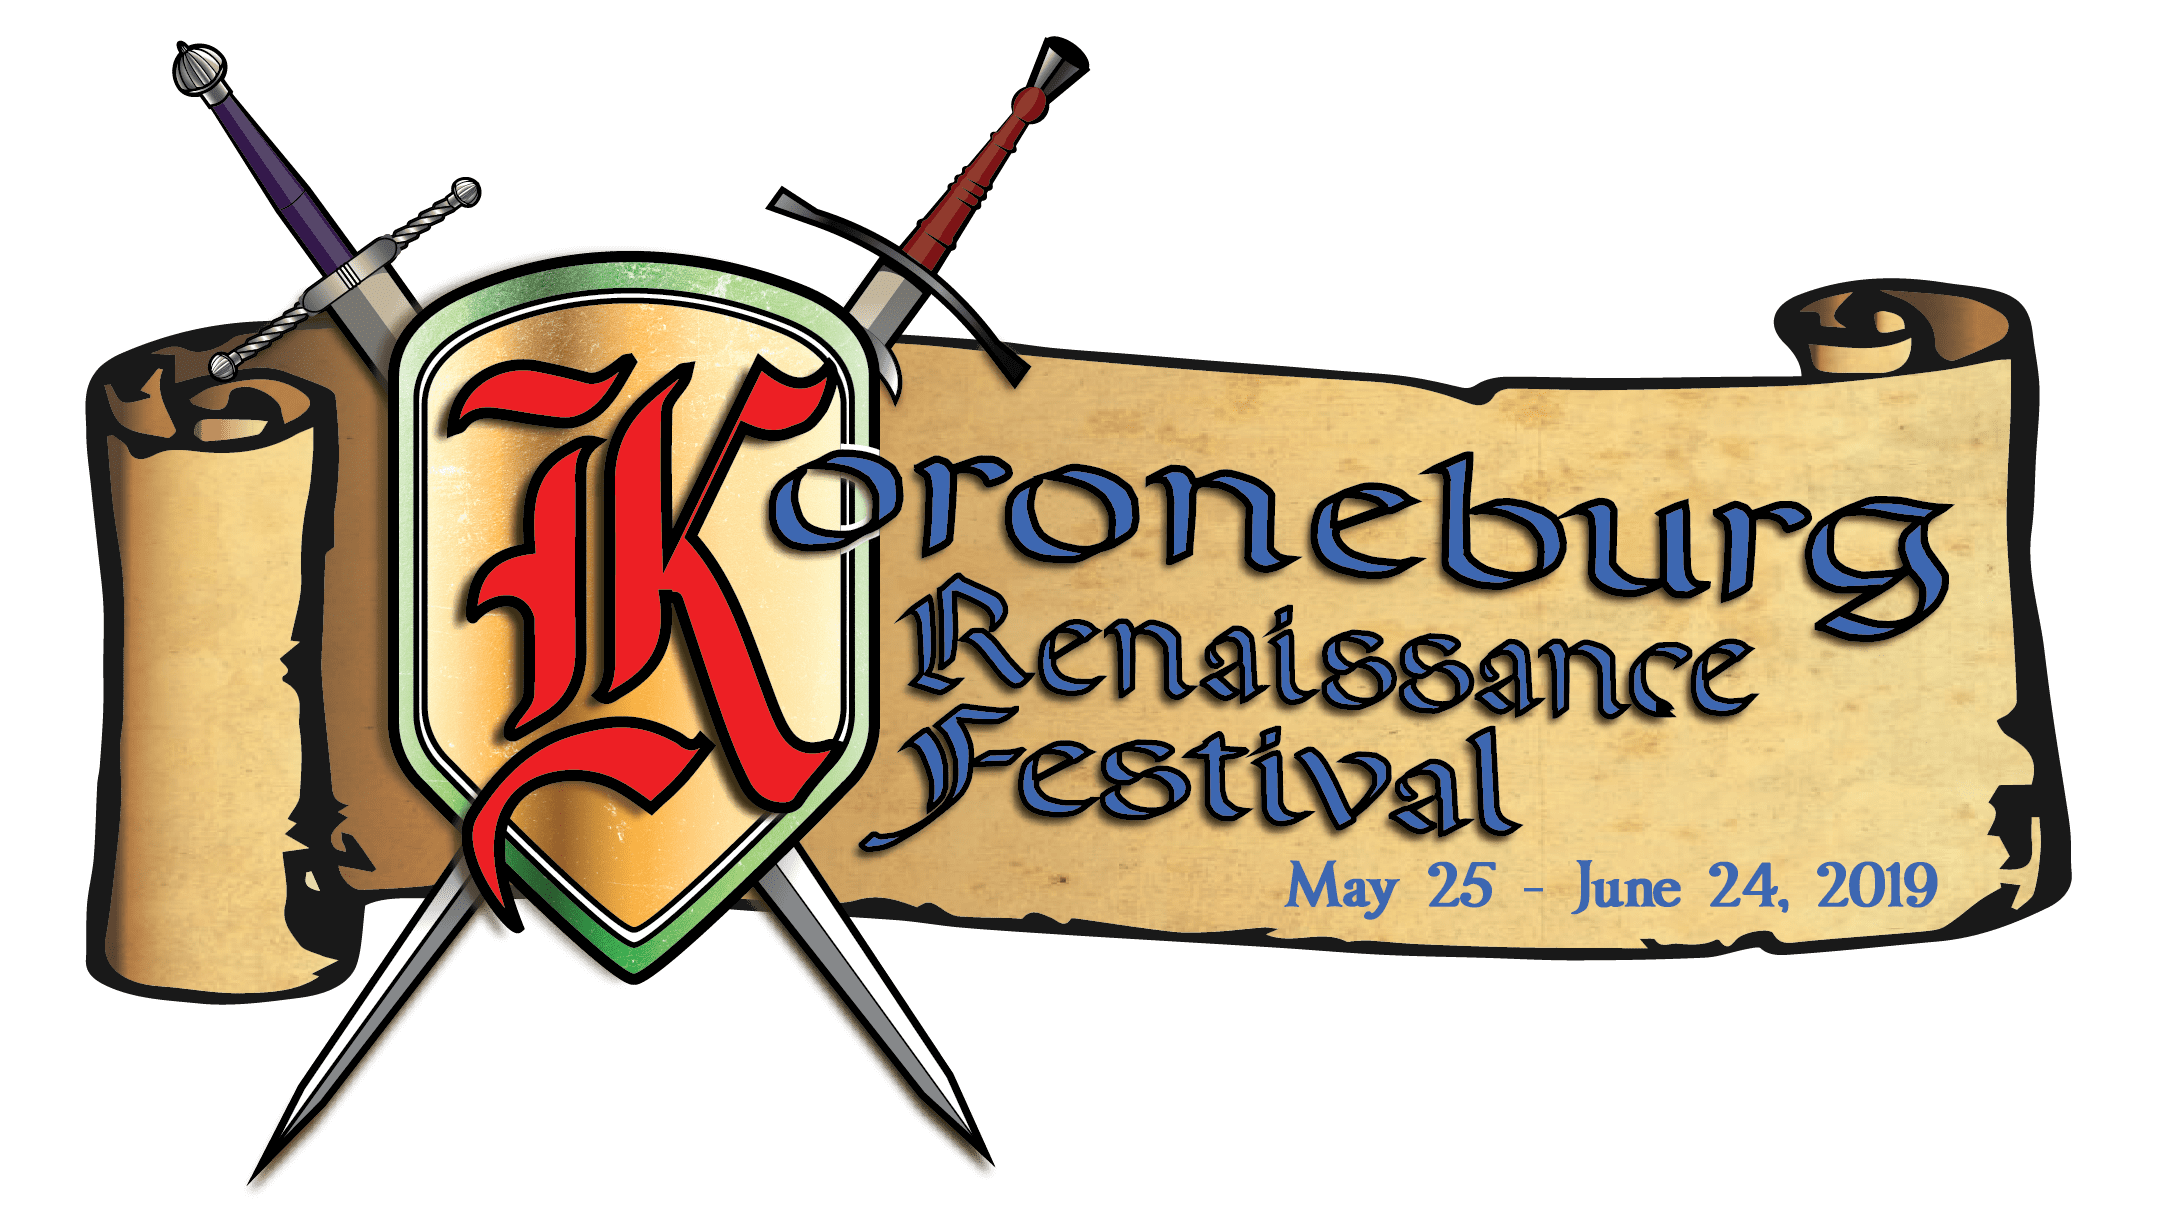 2019 Koroneburg Renaissance Festival